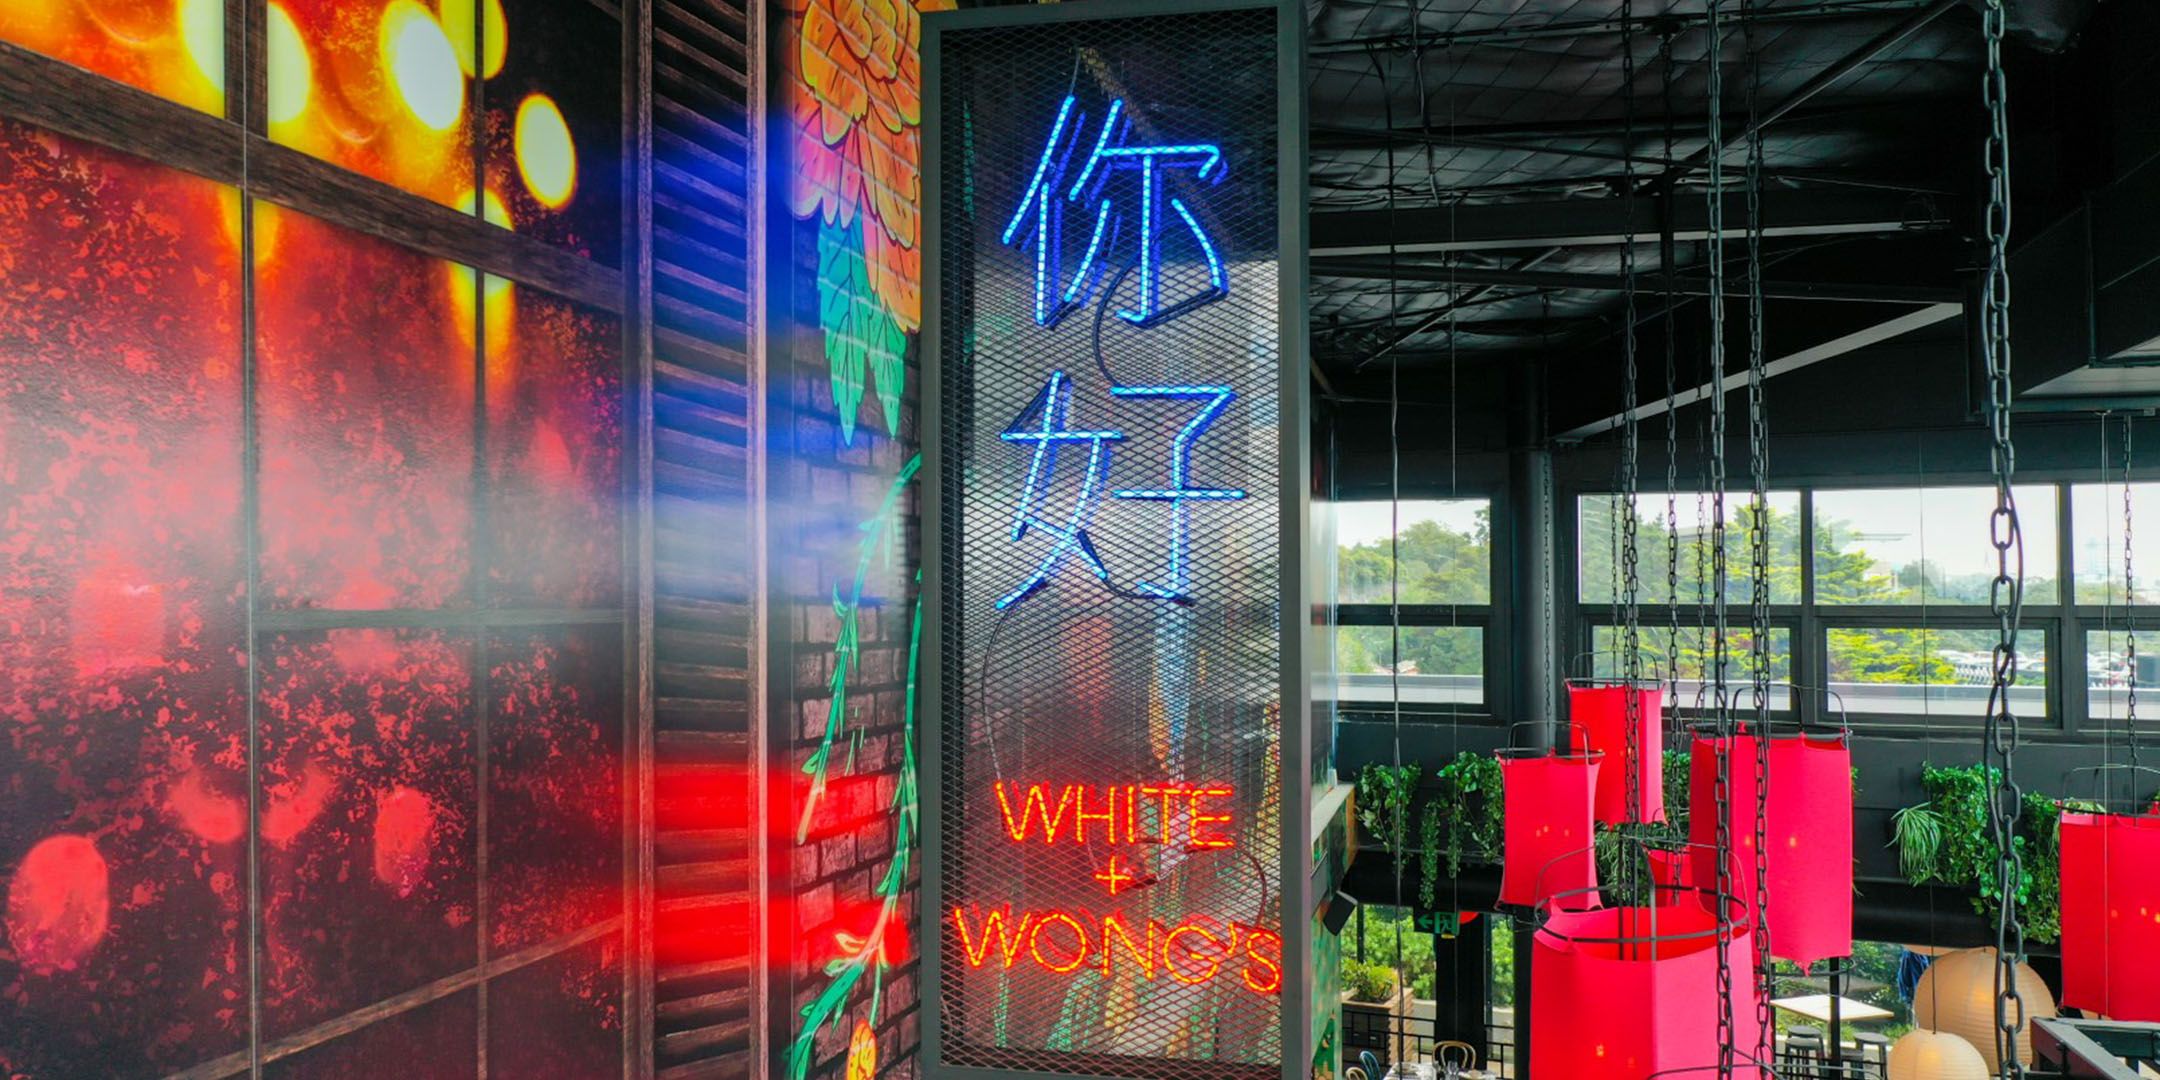 White + Wong’s